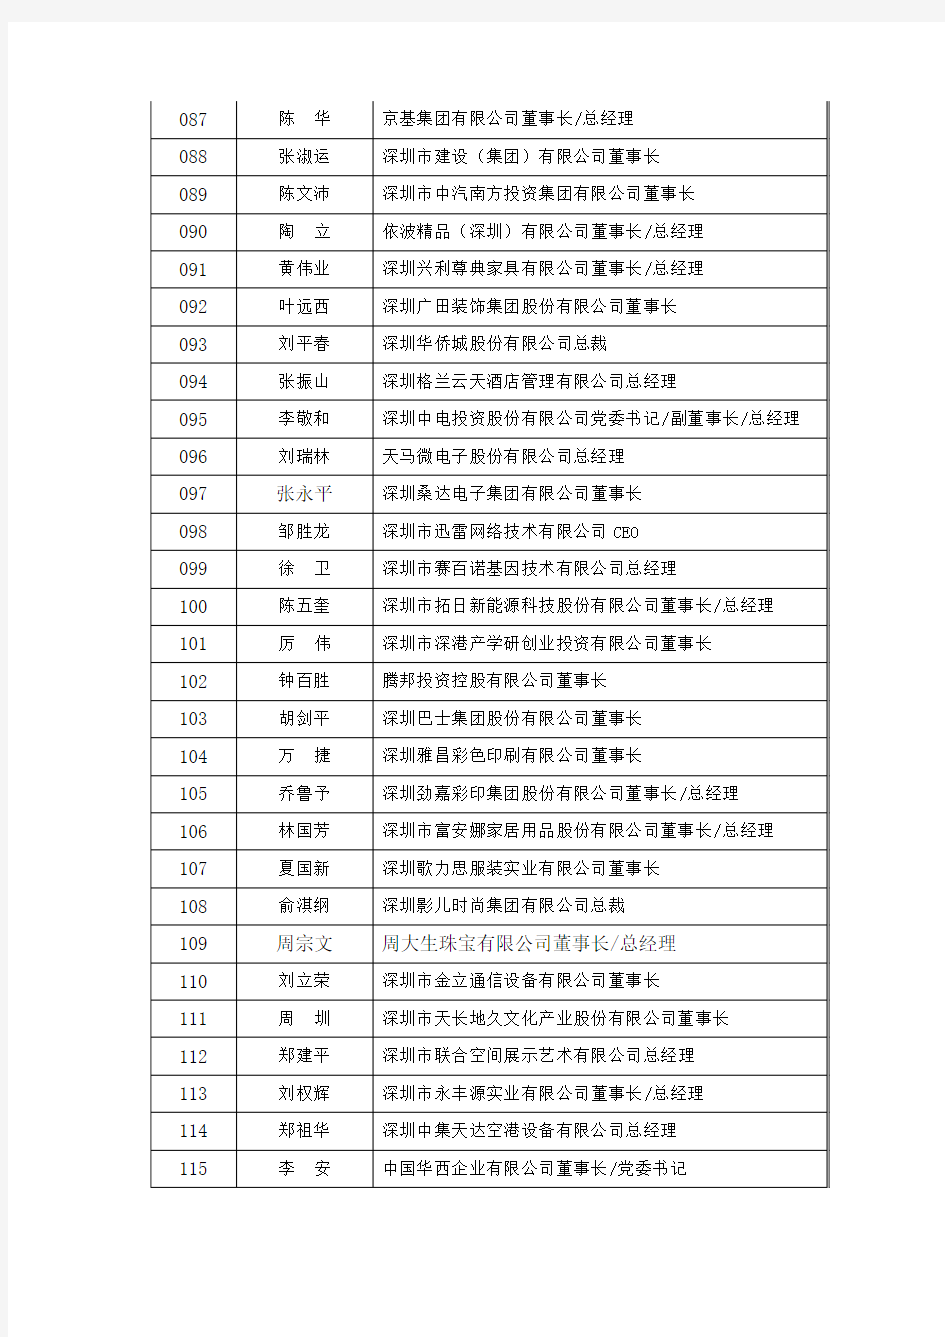 深圳经济特区30年行业领军人物提名名单